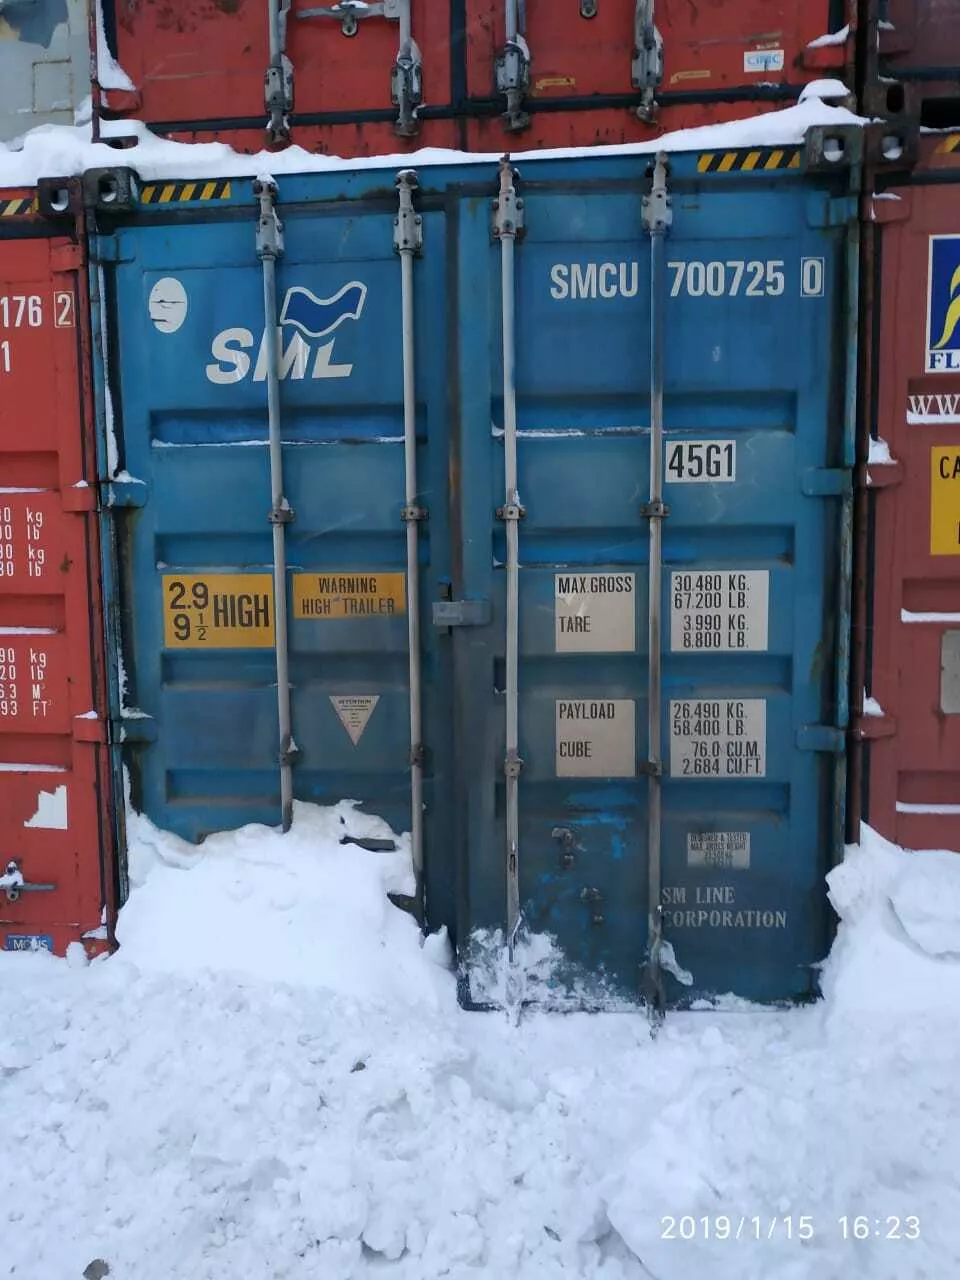 аренда морских сухогрузных контейнеров в Москве и Московской области 5